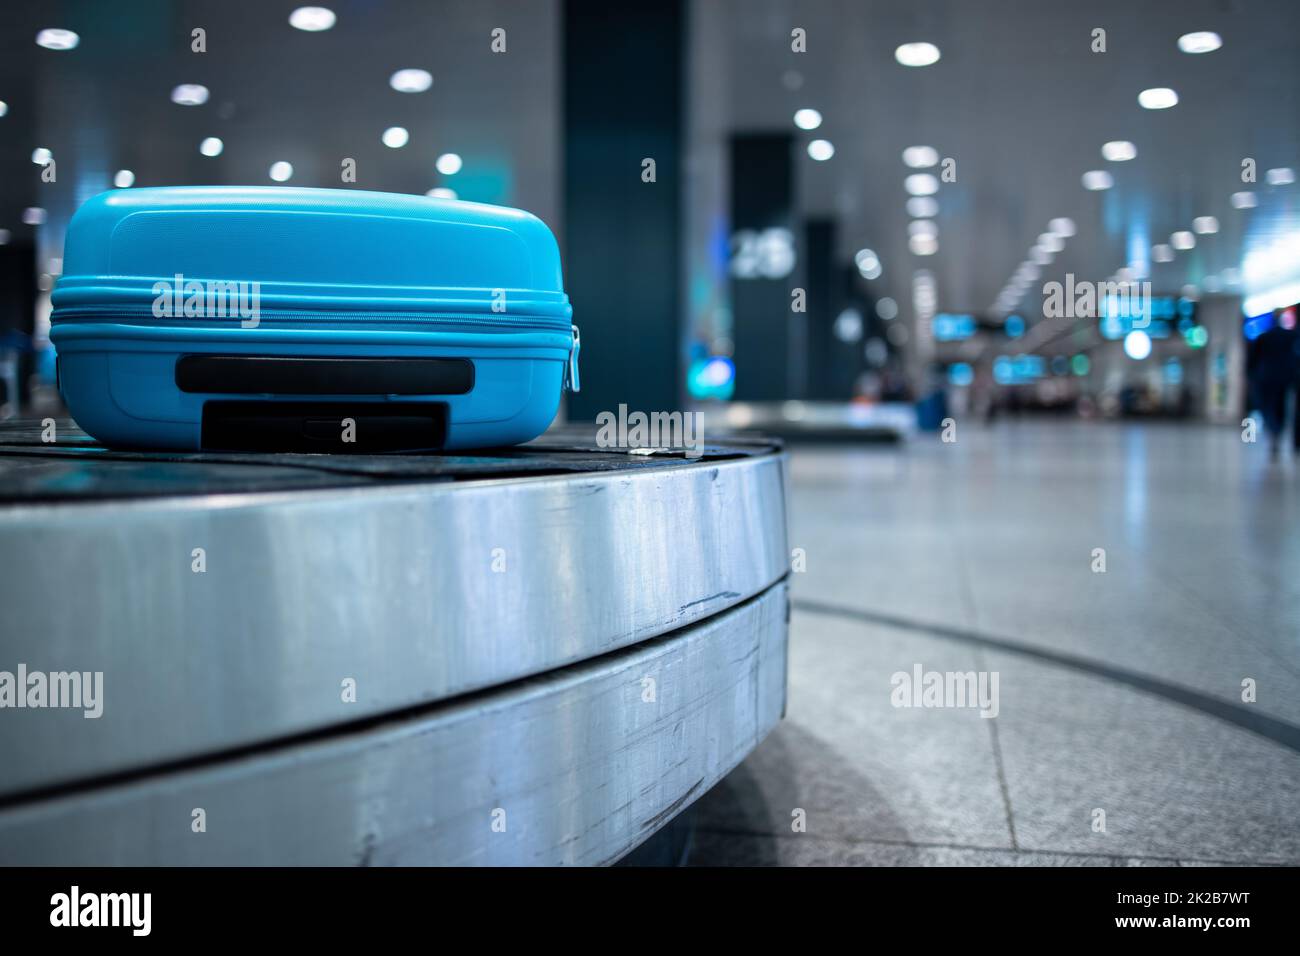 Arrivés assurance autour sur une courroie de convoyeur en attente d'être demandée à la zone de récupération des bagages à l'aéroport international moderne Banque D'Images